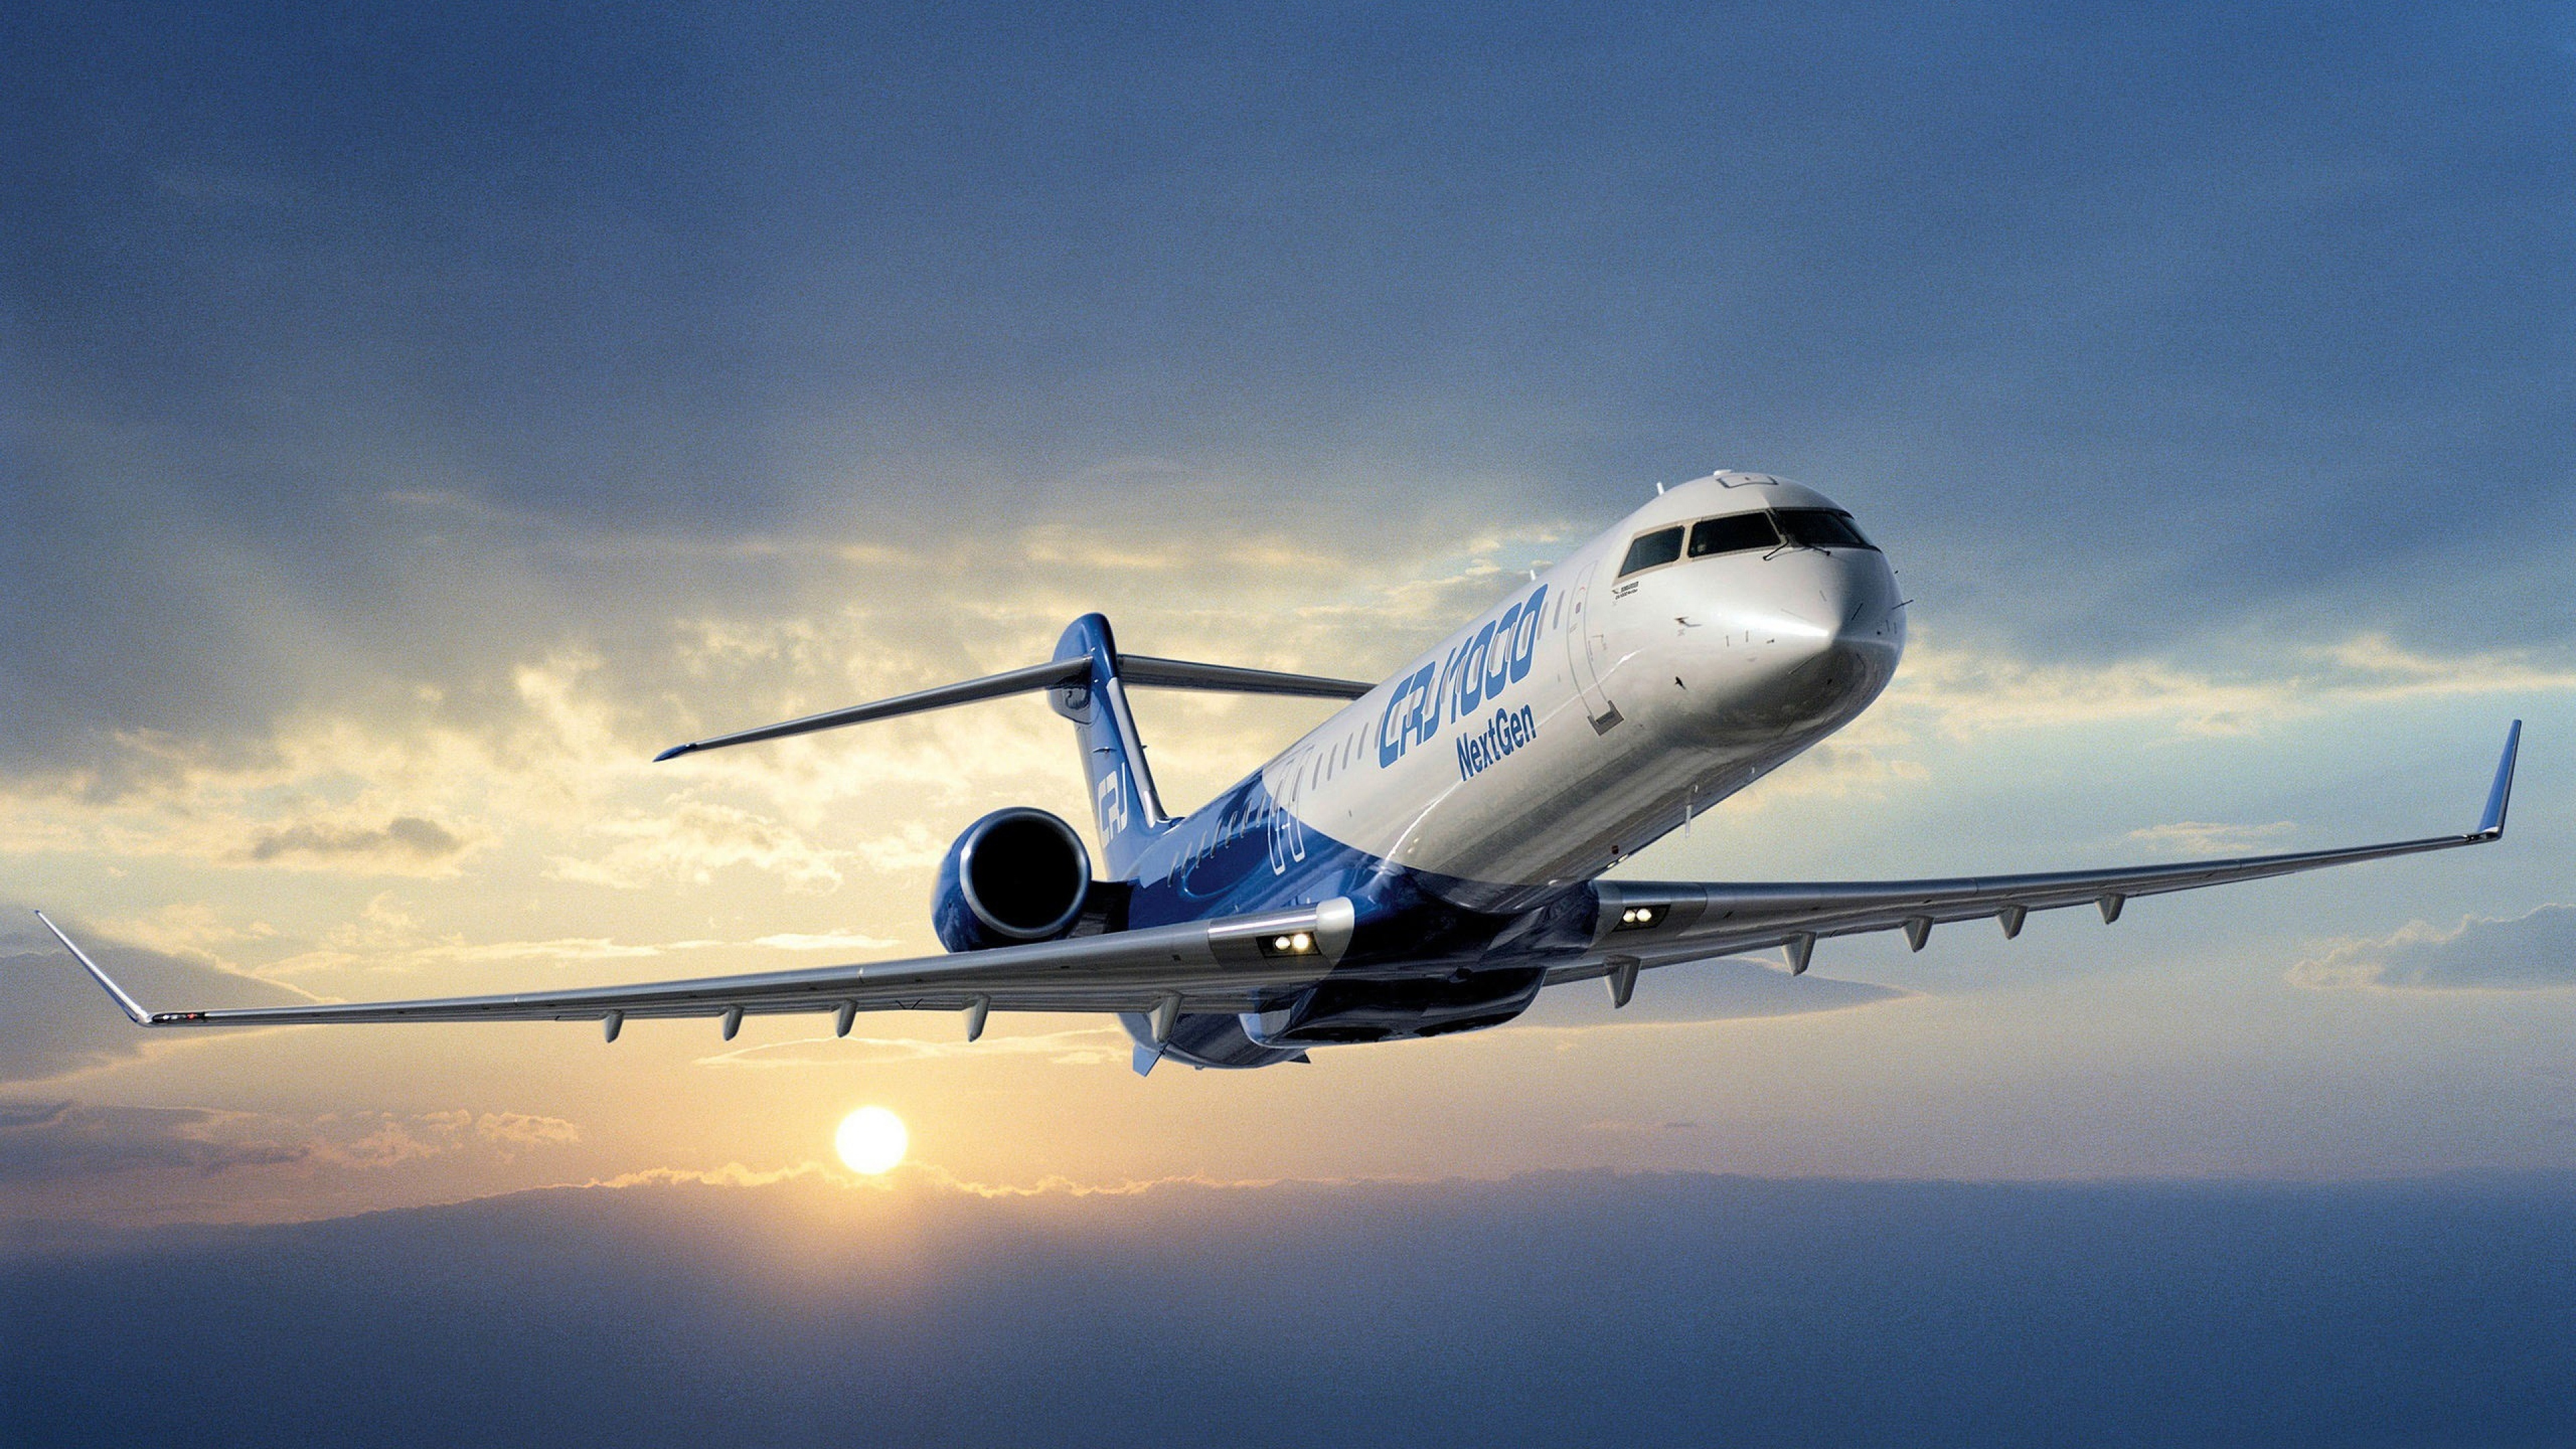 客机, 航空, 空中旅行, 航空公司, 航空航天工程 壁纸 3840x2160 允许